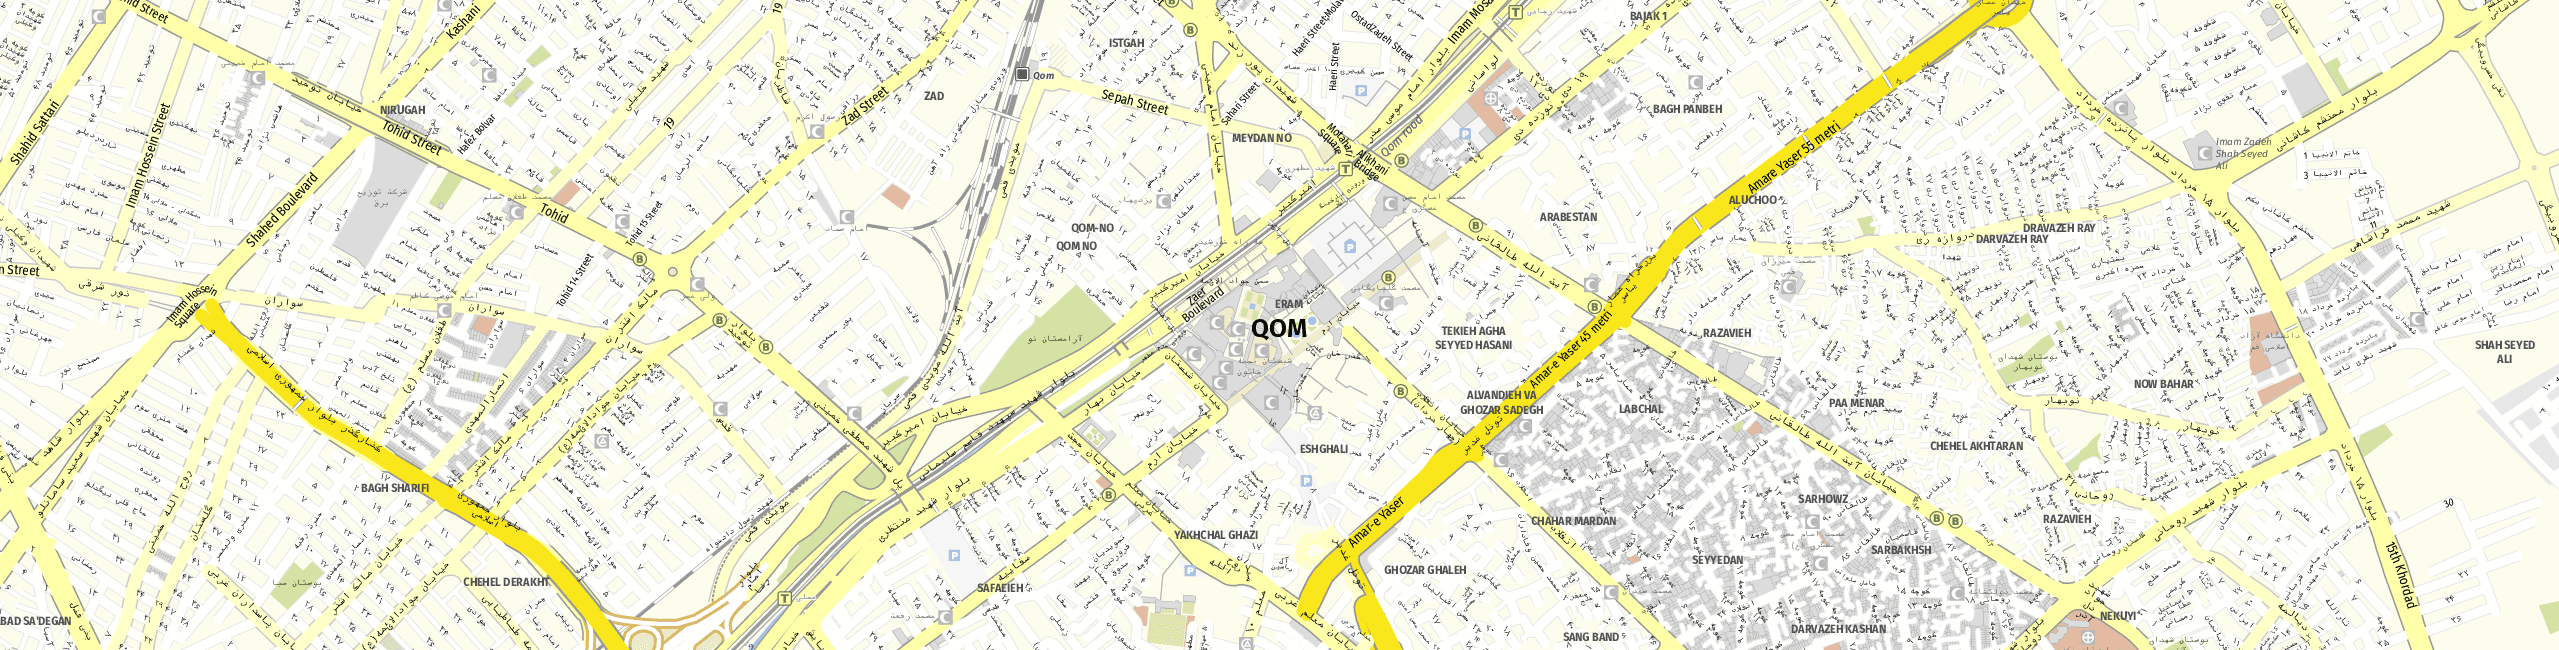 Stadtplan Ghom zum Downloaden.